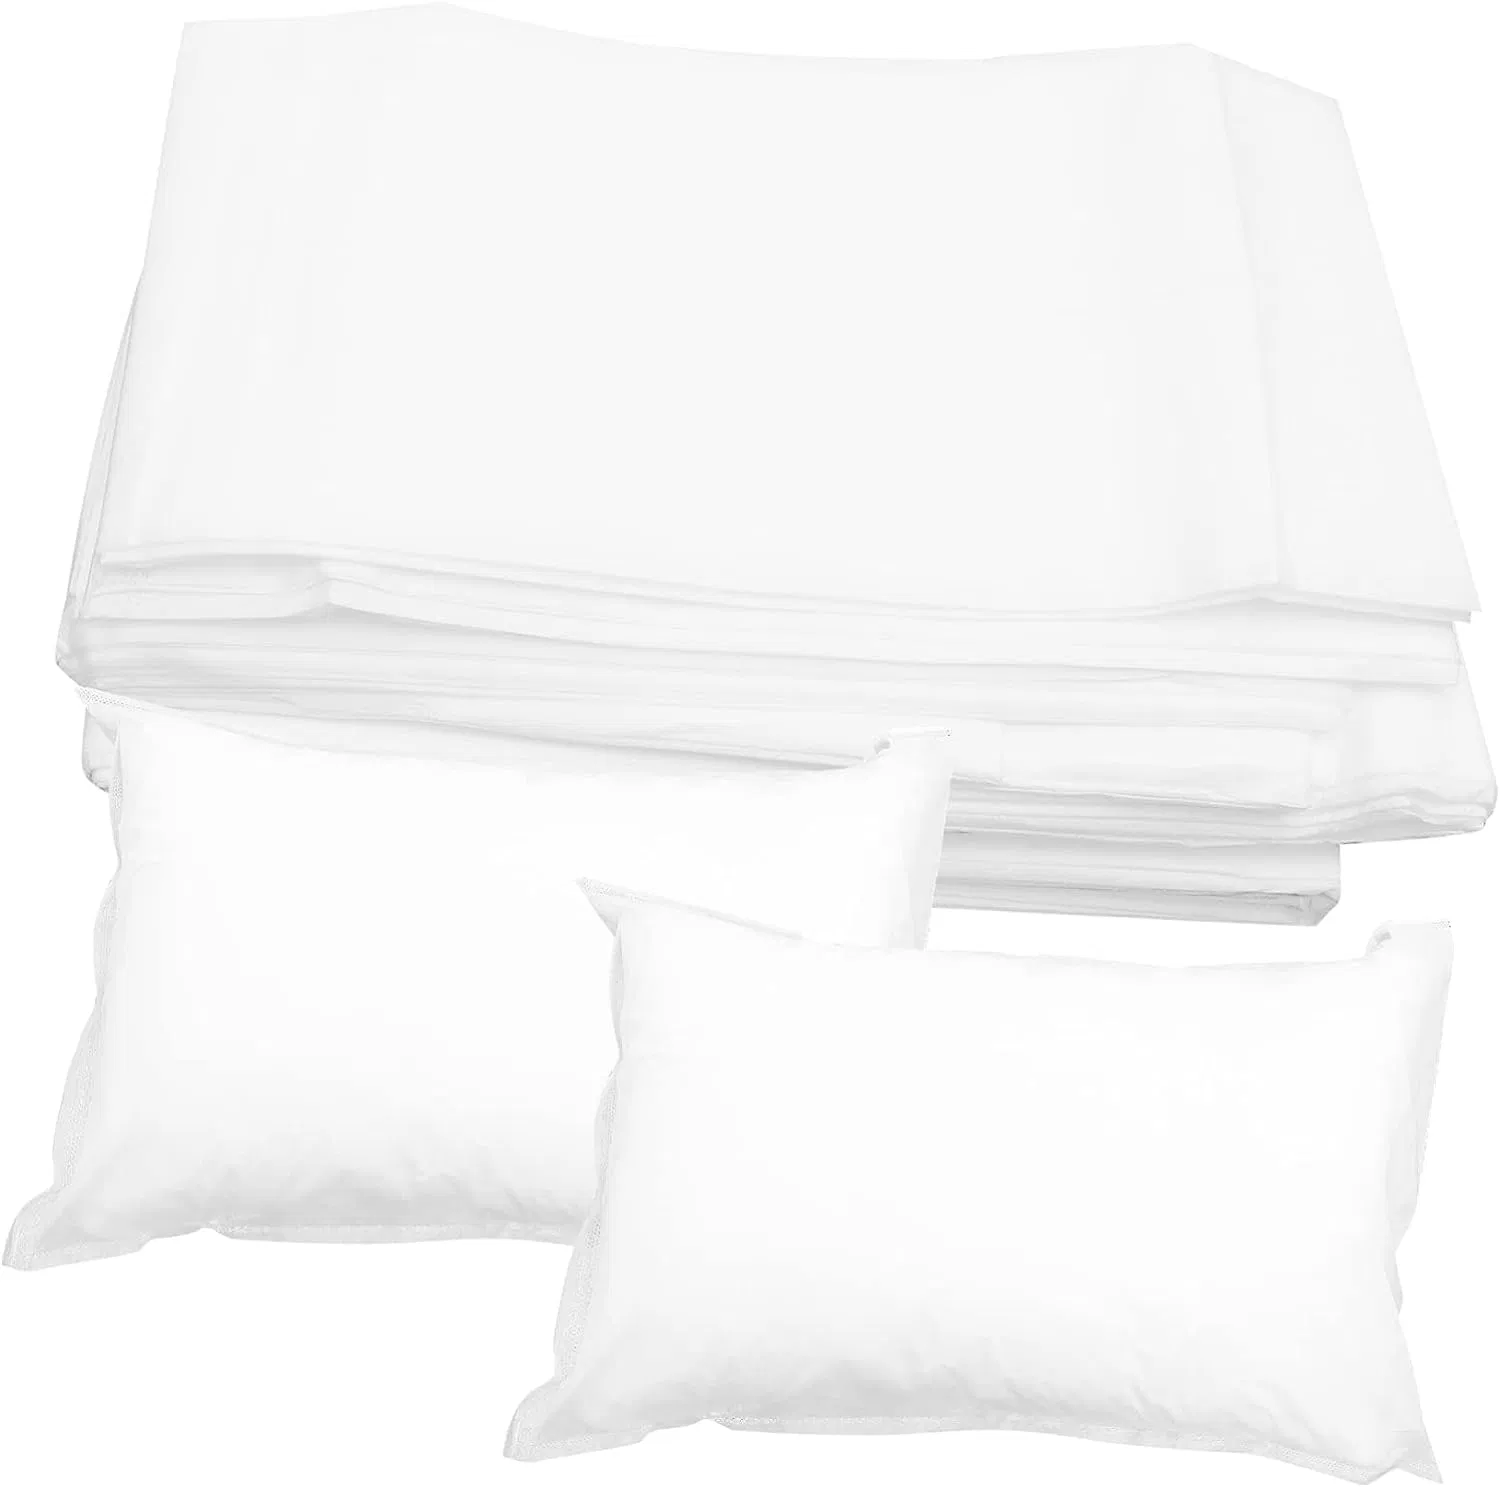 La literie jetable draps - tissu doux et résistant Non-Woven pour un voyage, l'hôpital, l'air et de la maison - Hypoallergène et pratique